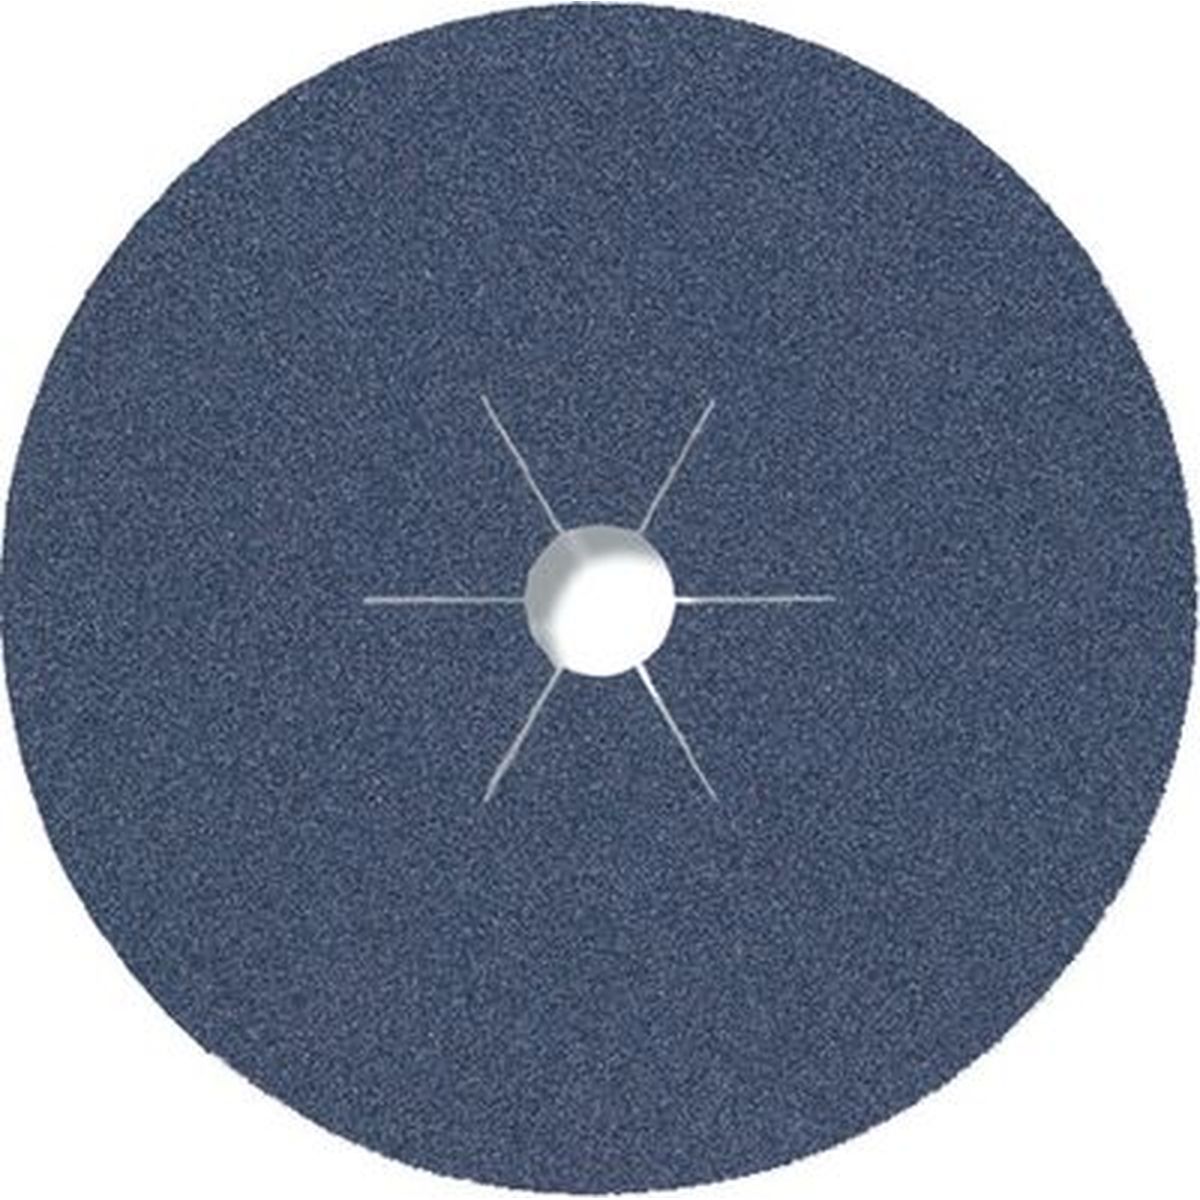 Fibre discs  115X22mm, Grit 60 CS 565 Klingspor